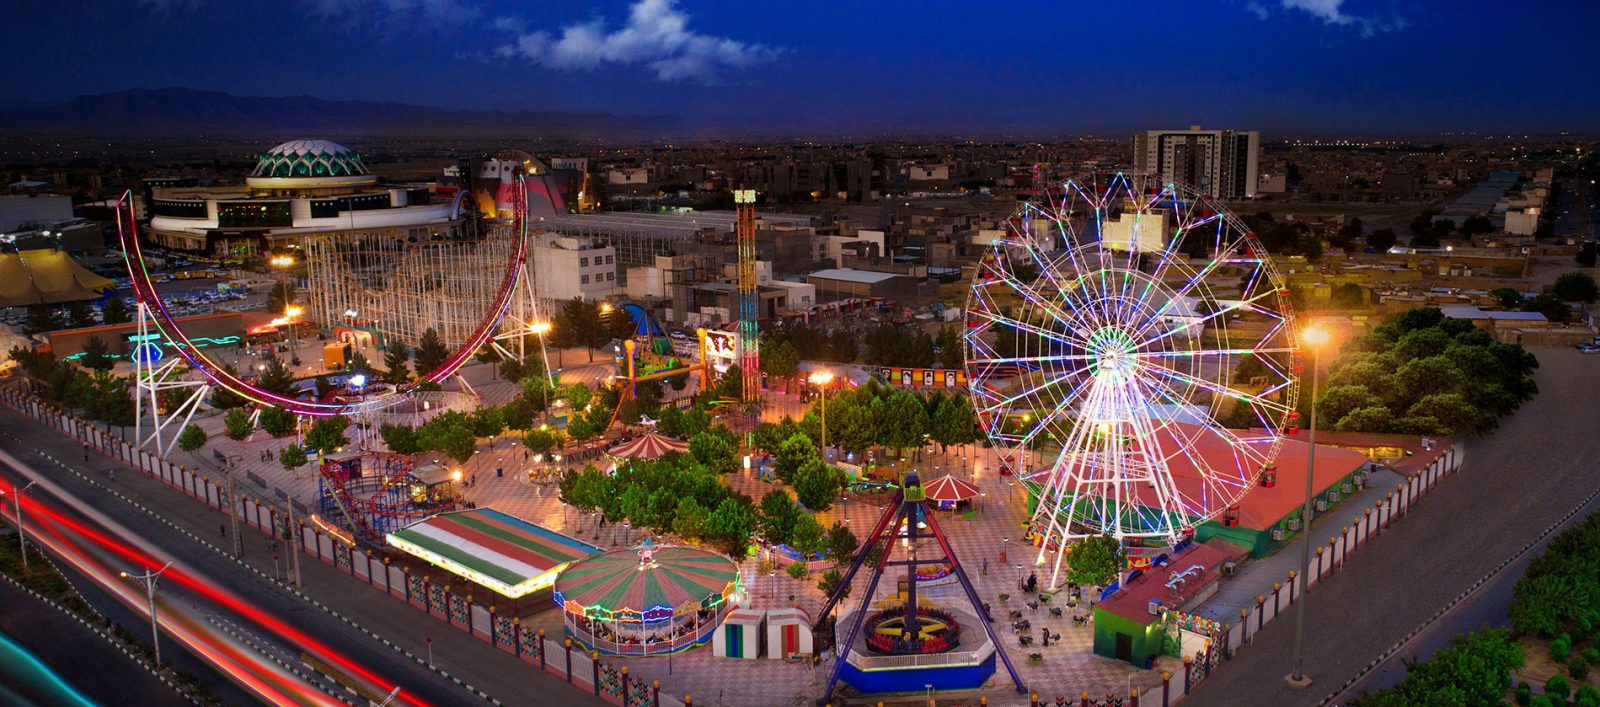 جاهای تفریحی برای کودکان در مشهد